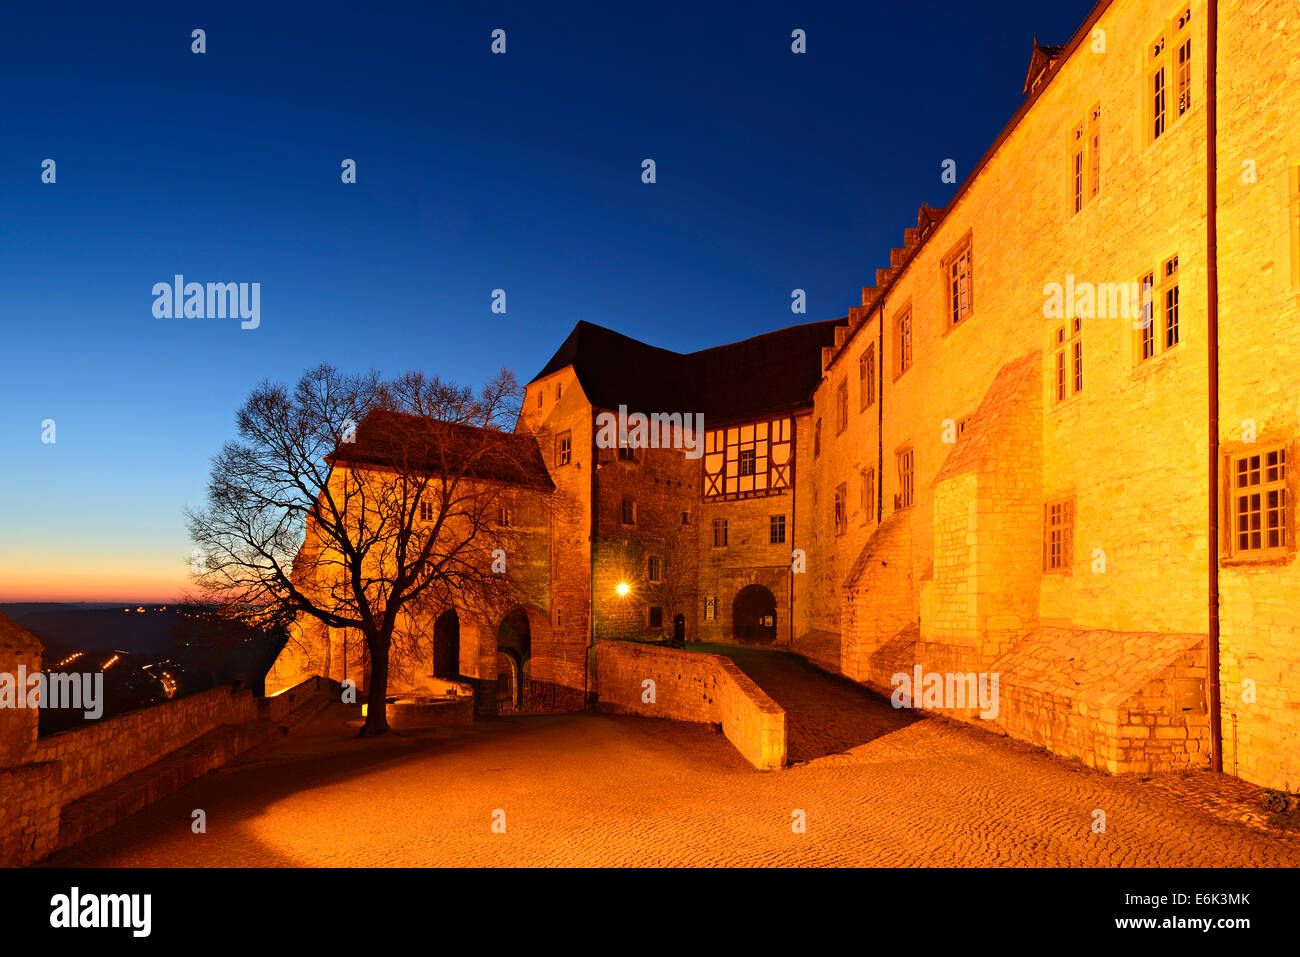 Schloss Neuenburg Castle at night, Freyburg, Saxony-Anhalt, Germany Stock Photo